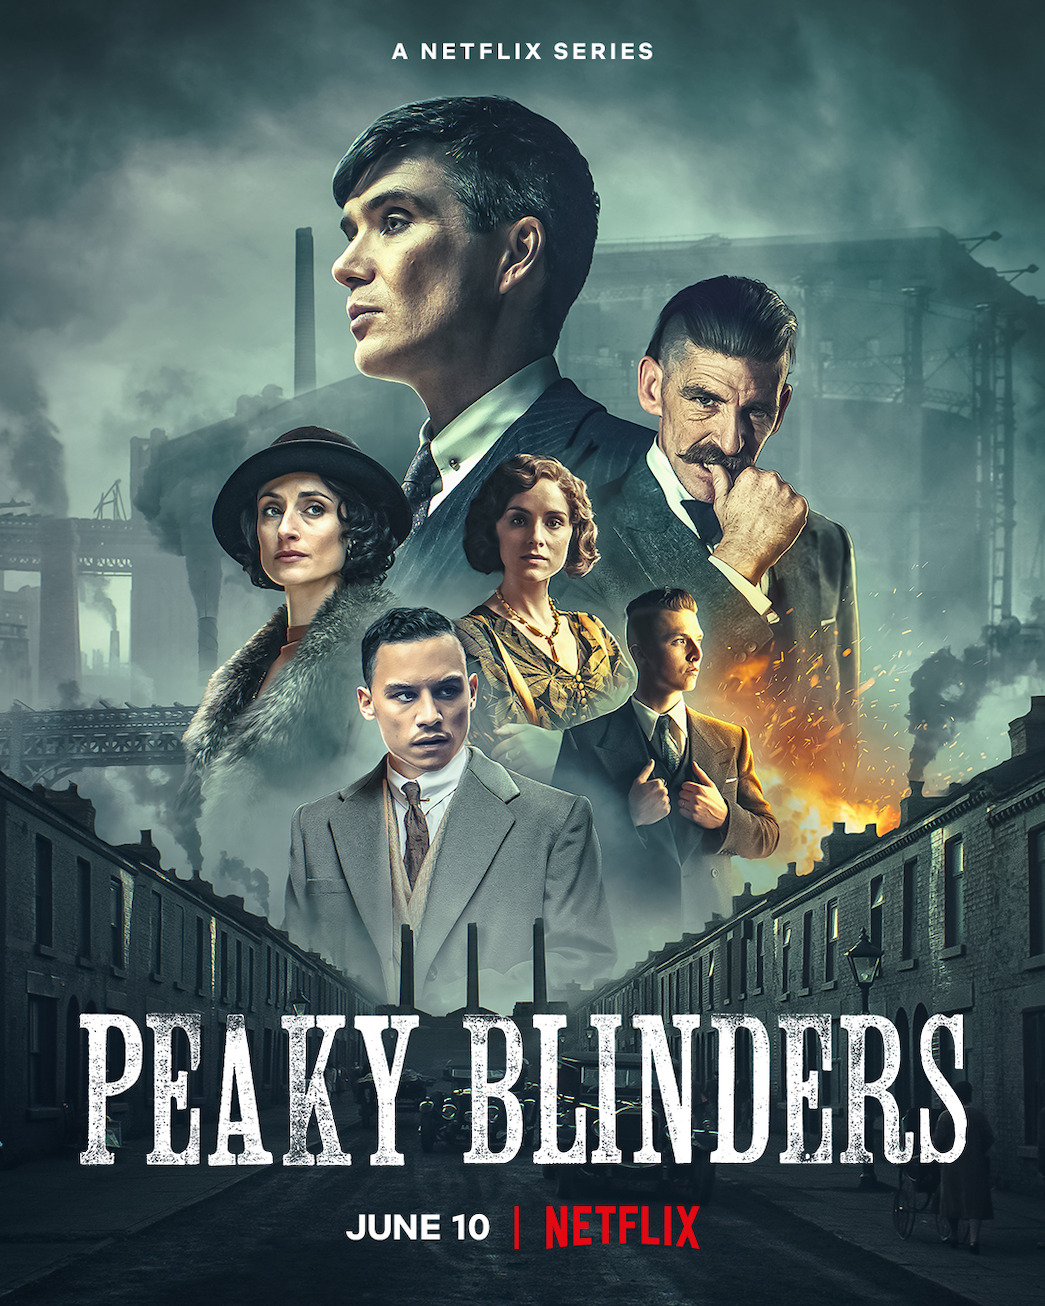 Peaky Blinders Season 1-6 Blu-ray 6 Disc BD TV Series All Region